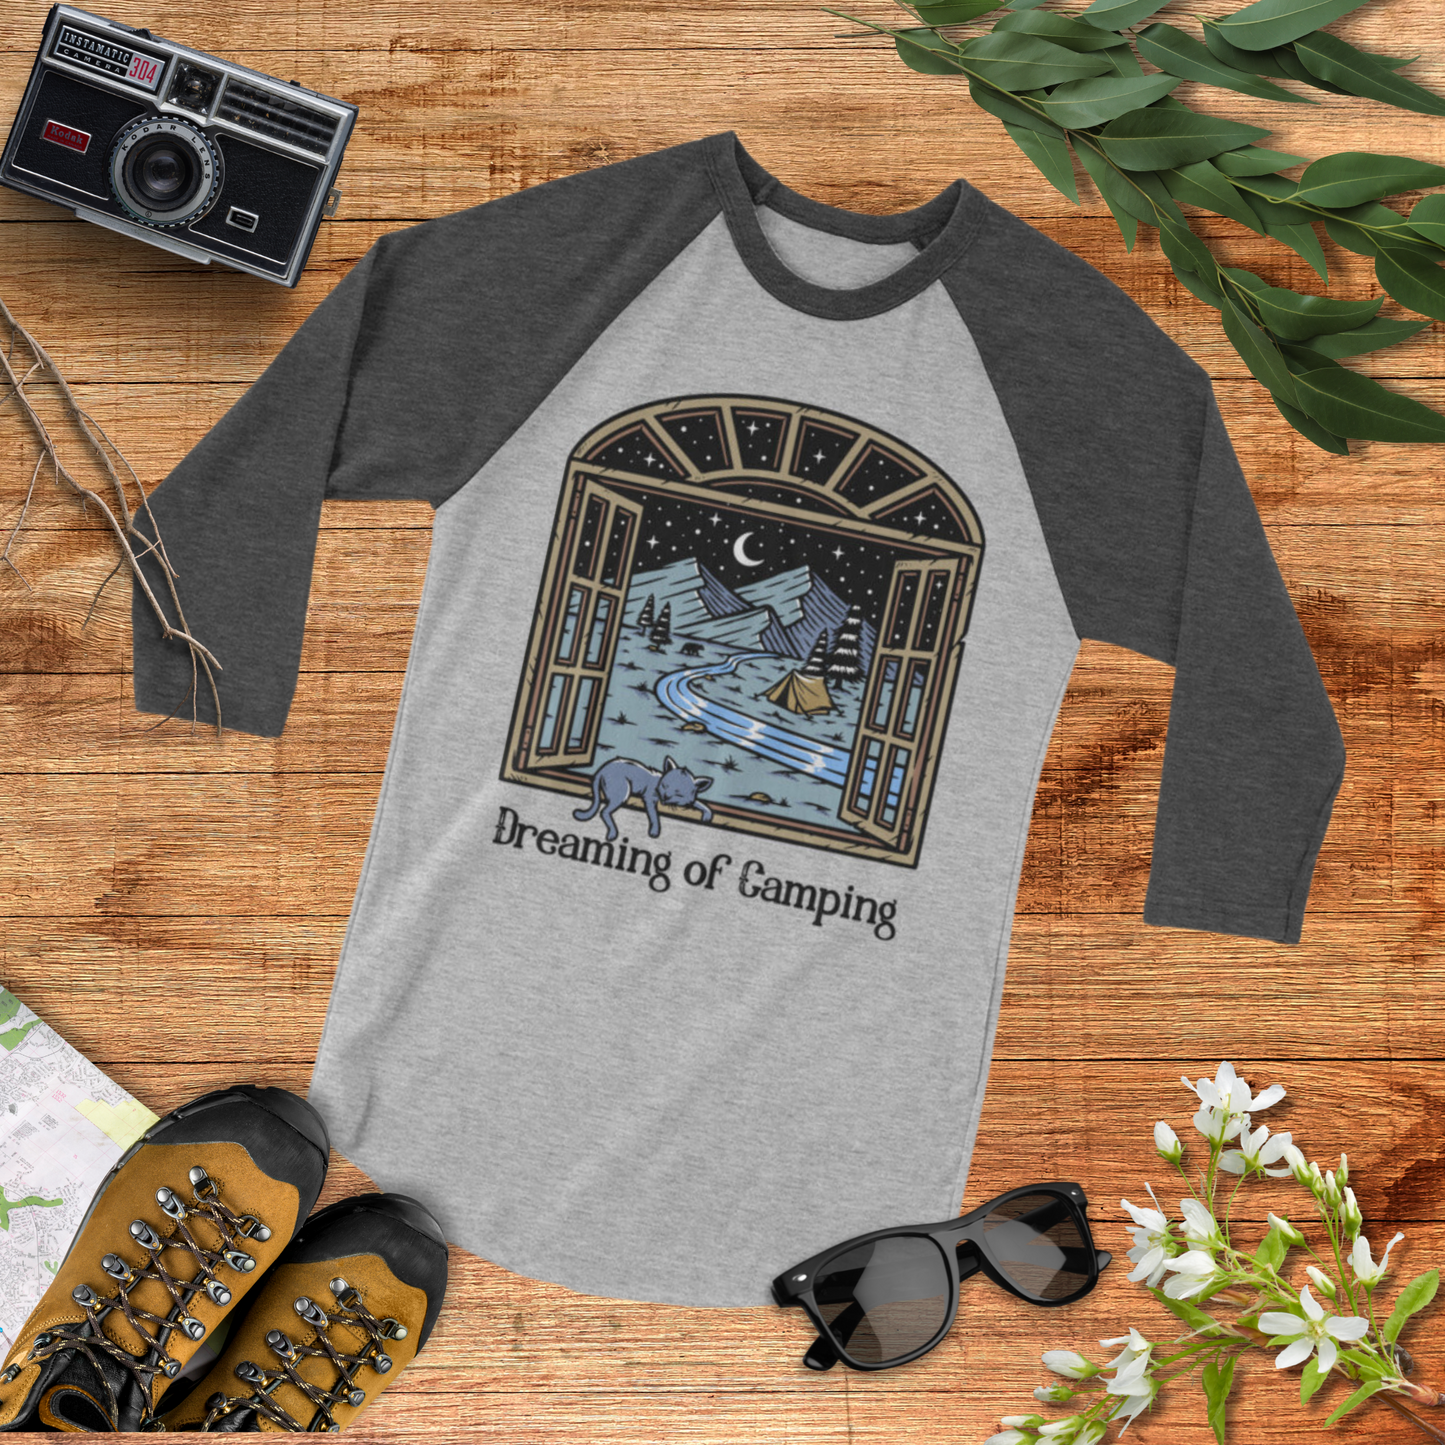 Dreaming of Camping | Outdoorsy Raglan T-Shirt